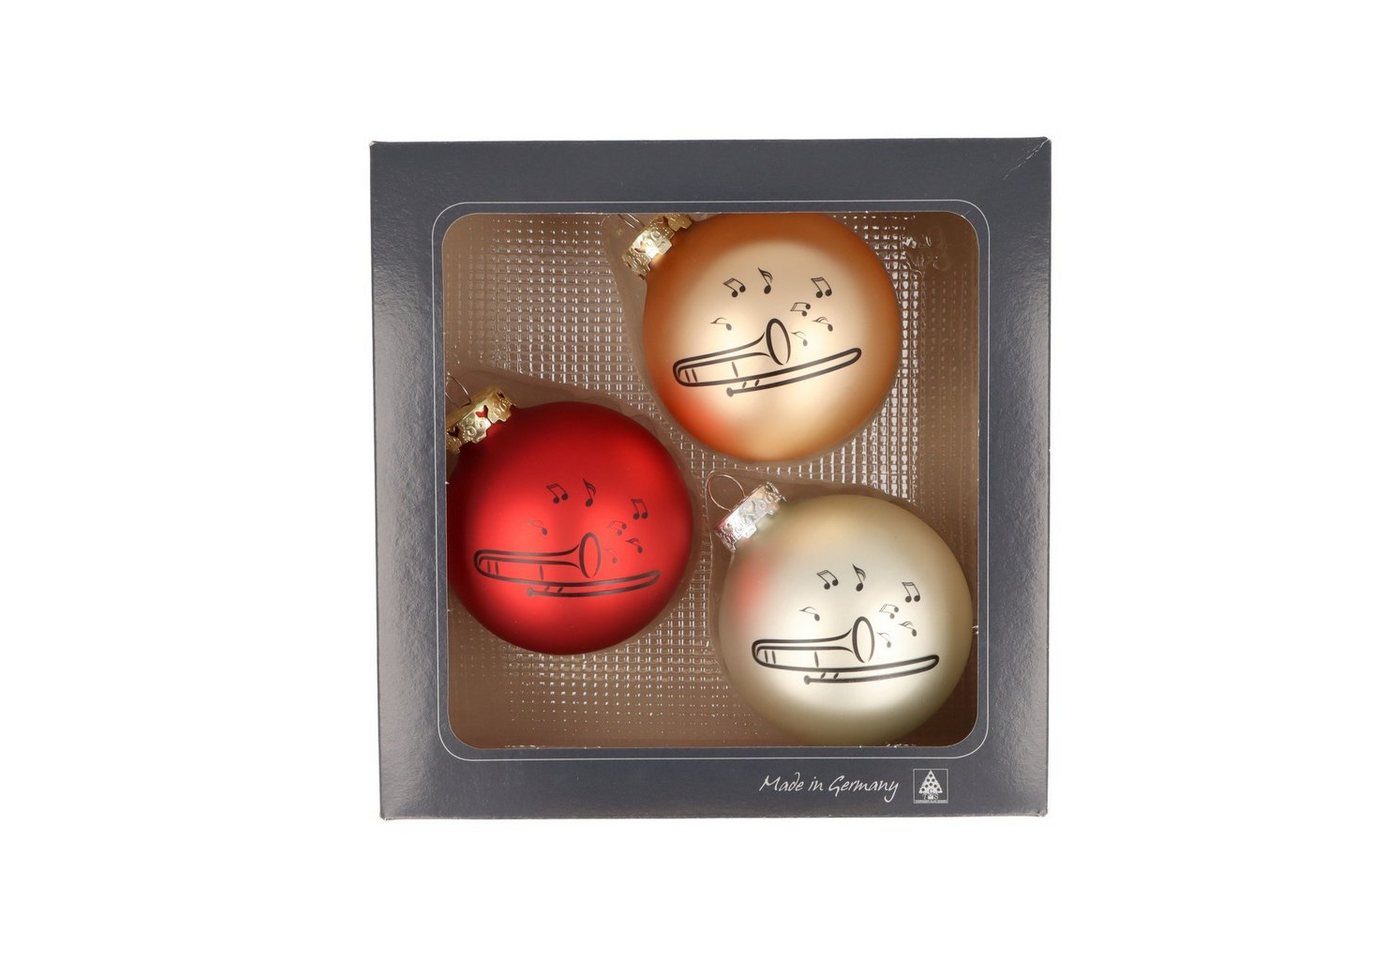 Musikboutique Weihnachtsbaumkugel 3er-Set Weihnachtskugeln mit Posaune-Druck, verschiedene Farben -, 3er-Set aus Glas mit schwarzem Posaune-Druck, Farbe rot/gold/silber von Musikboutique